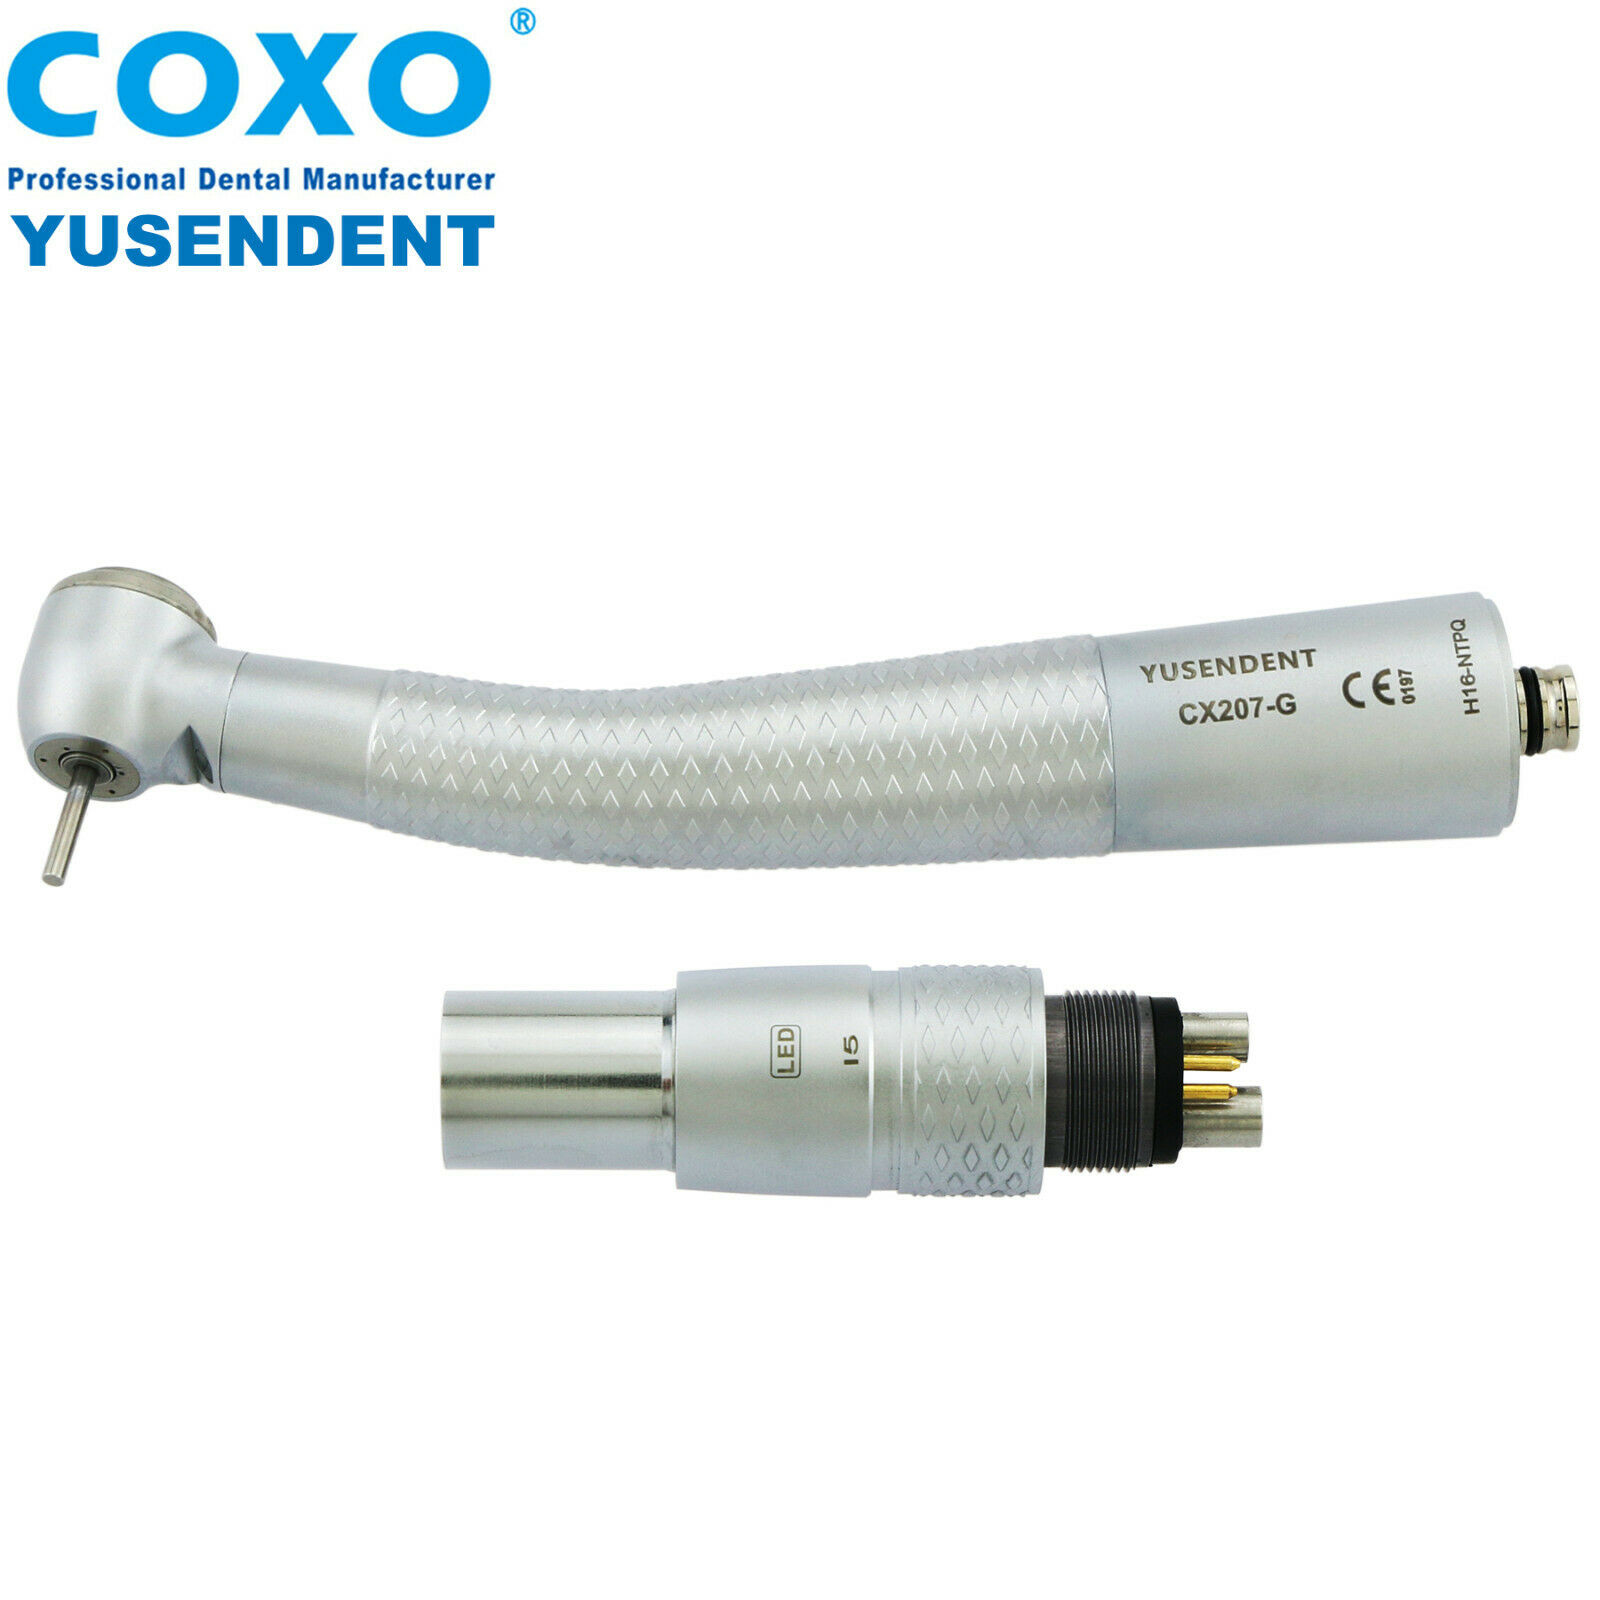 COXO®歯科用ライト付き高速ハンドピースCX207-GN-TP（NSKとコンパチブル、カップリング付き）